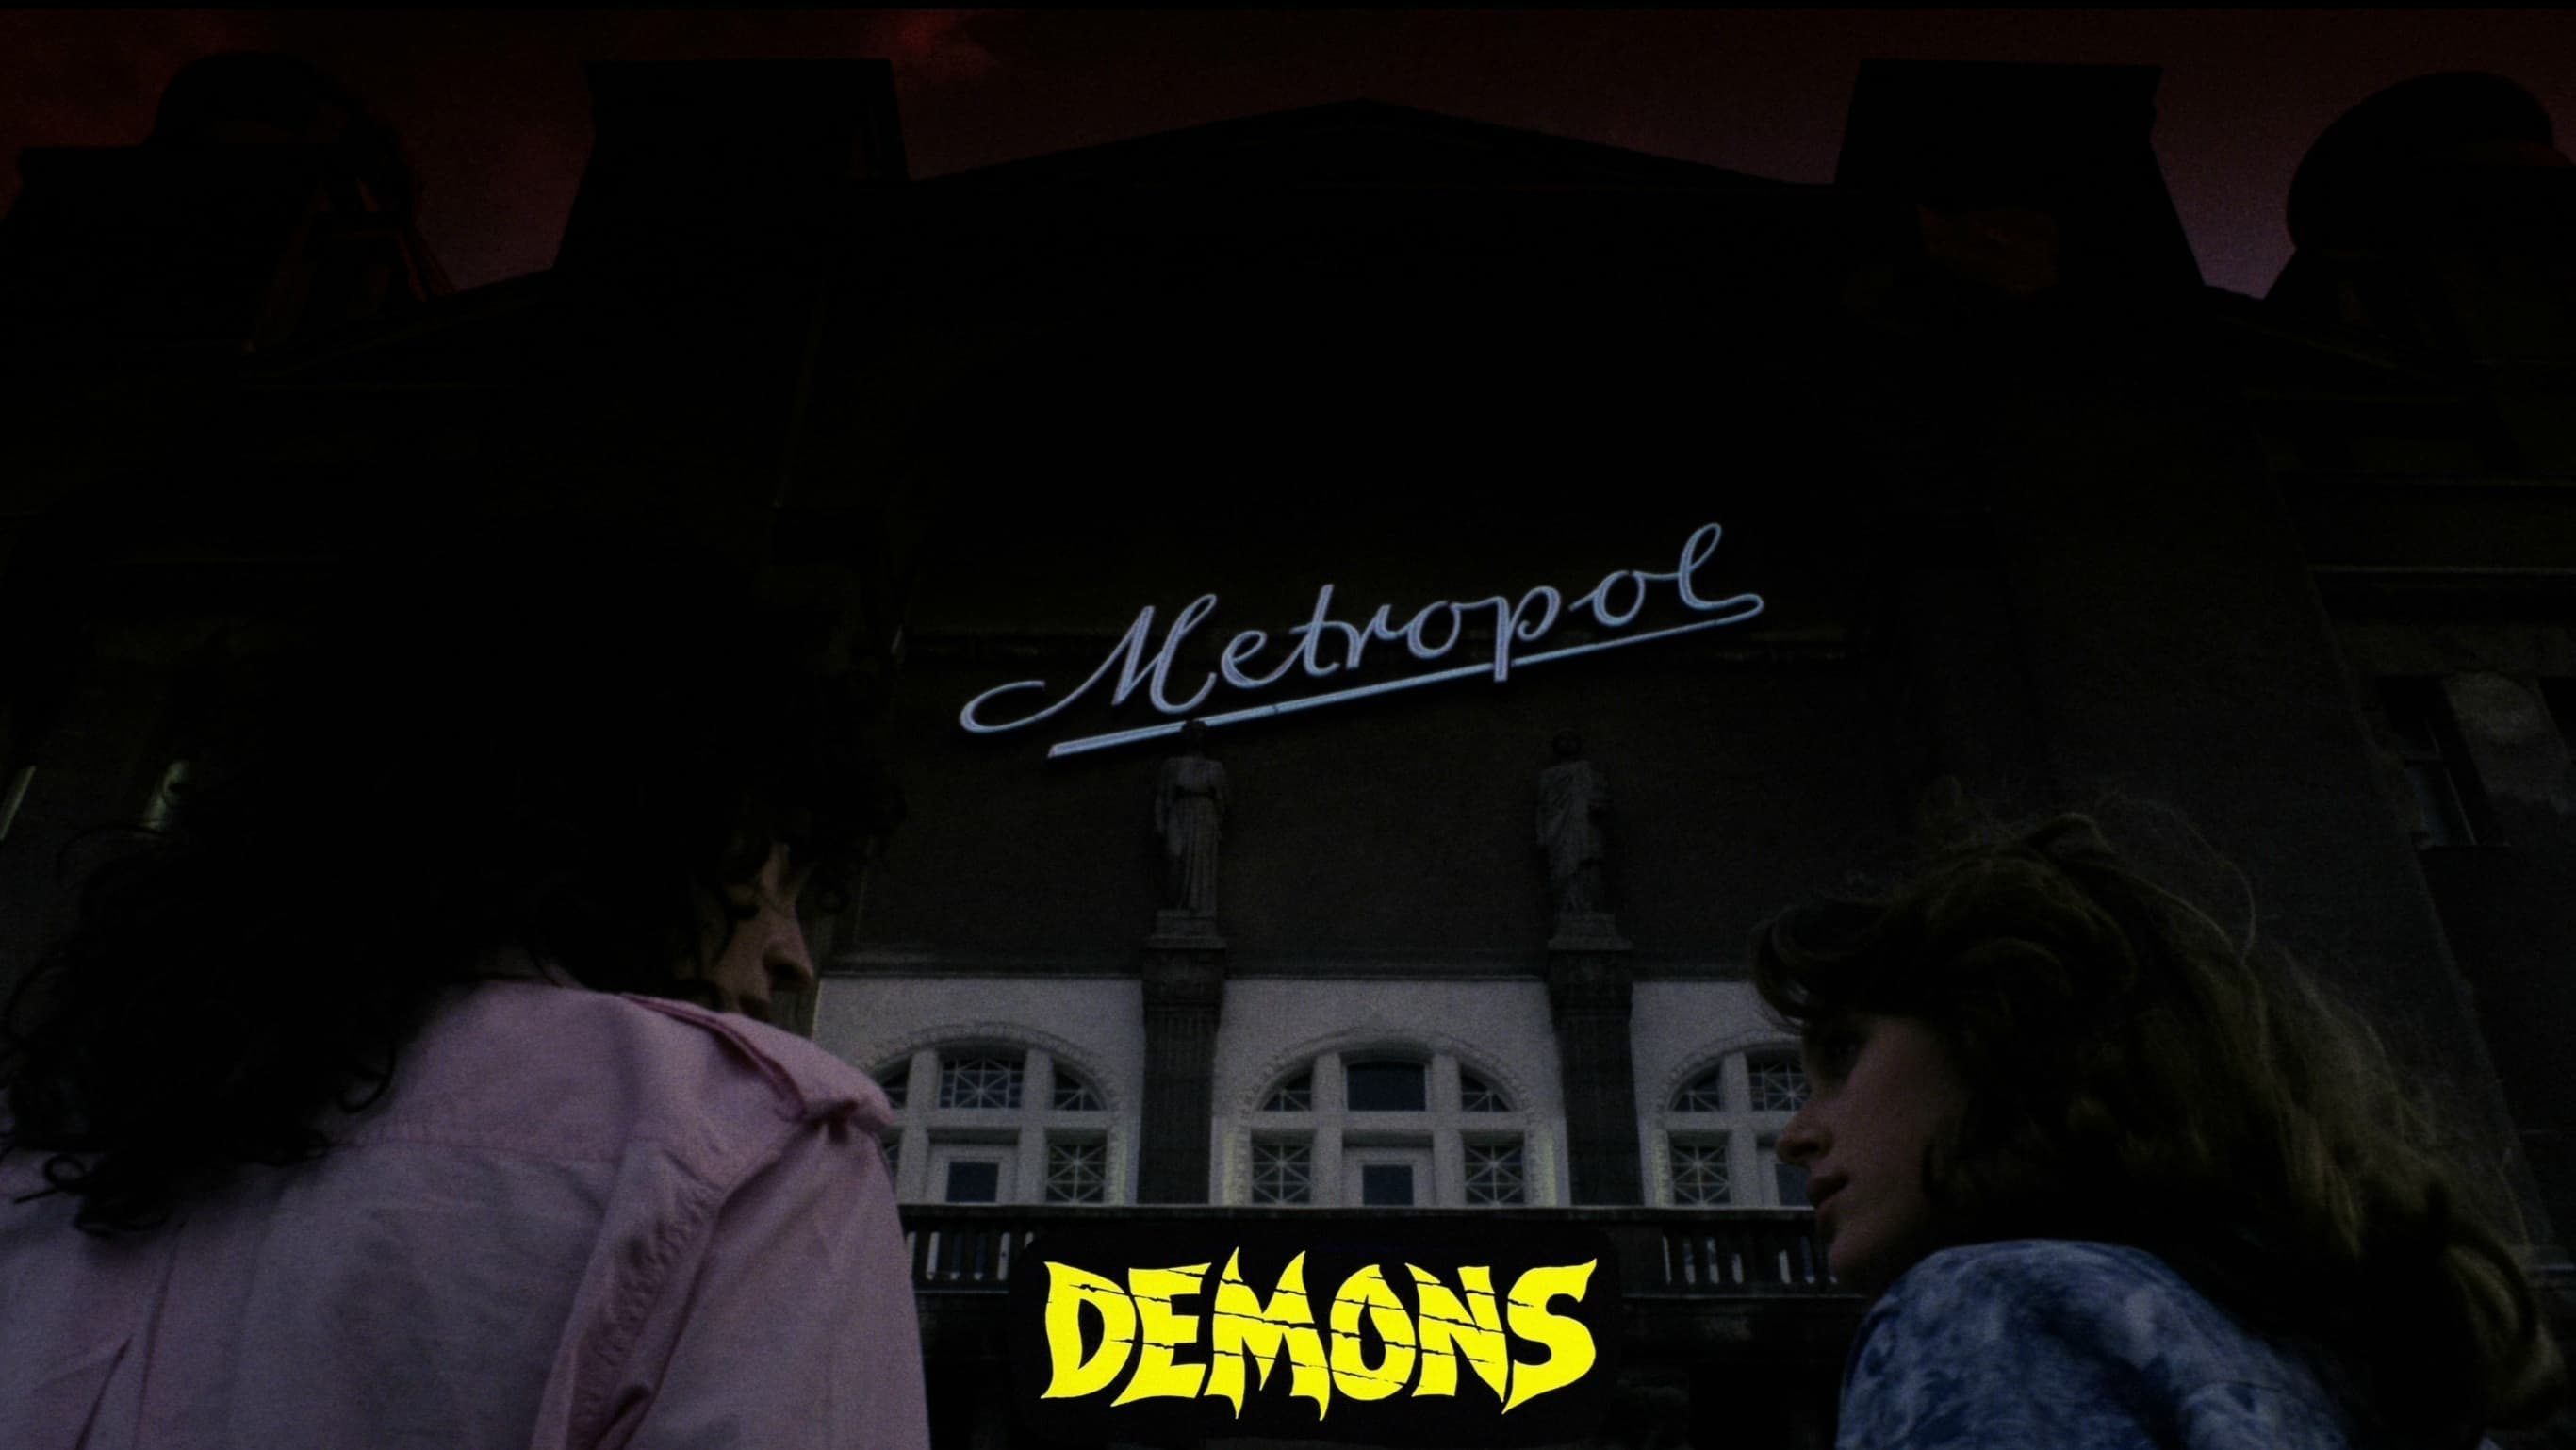 Демоны (1985)